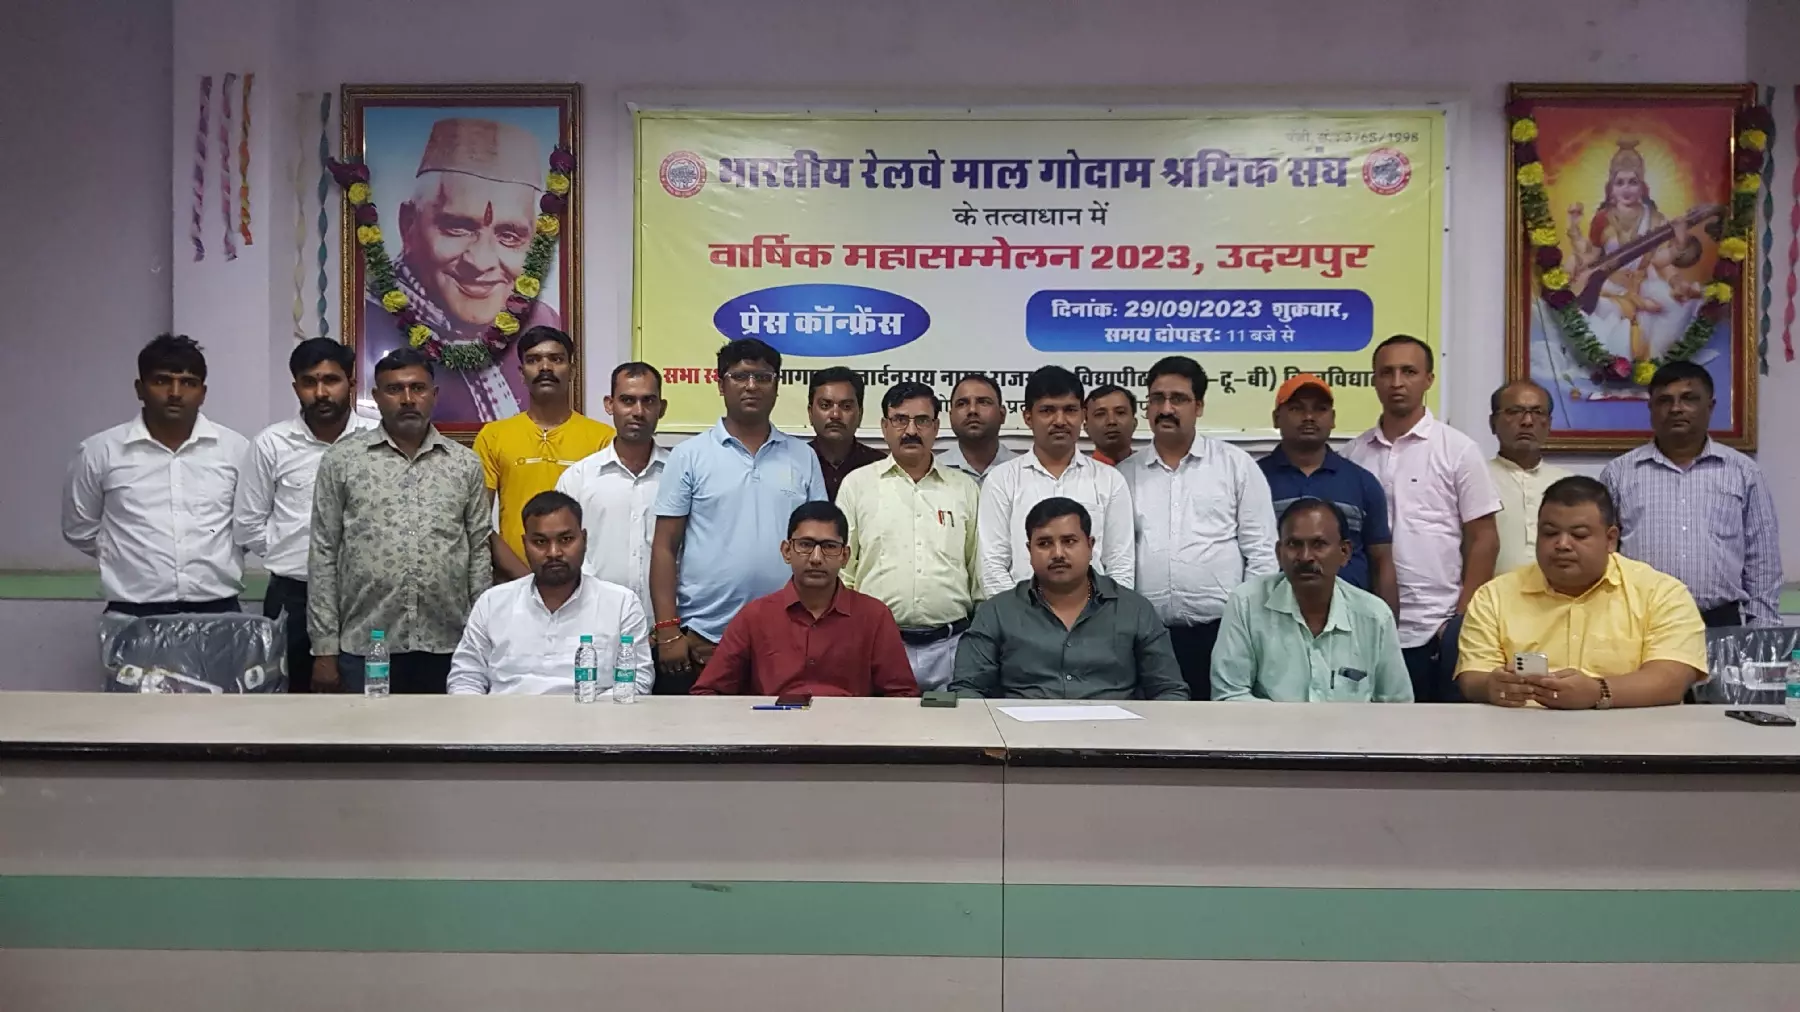 भारतीय रेलवे माल गोदाम श्रमिक संघ का वार्षिक सम्मेलन शनिवार को उदयपुर में